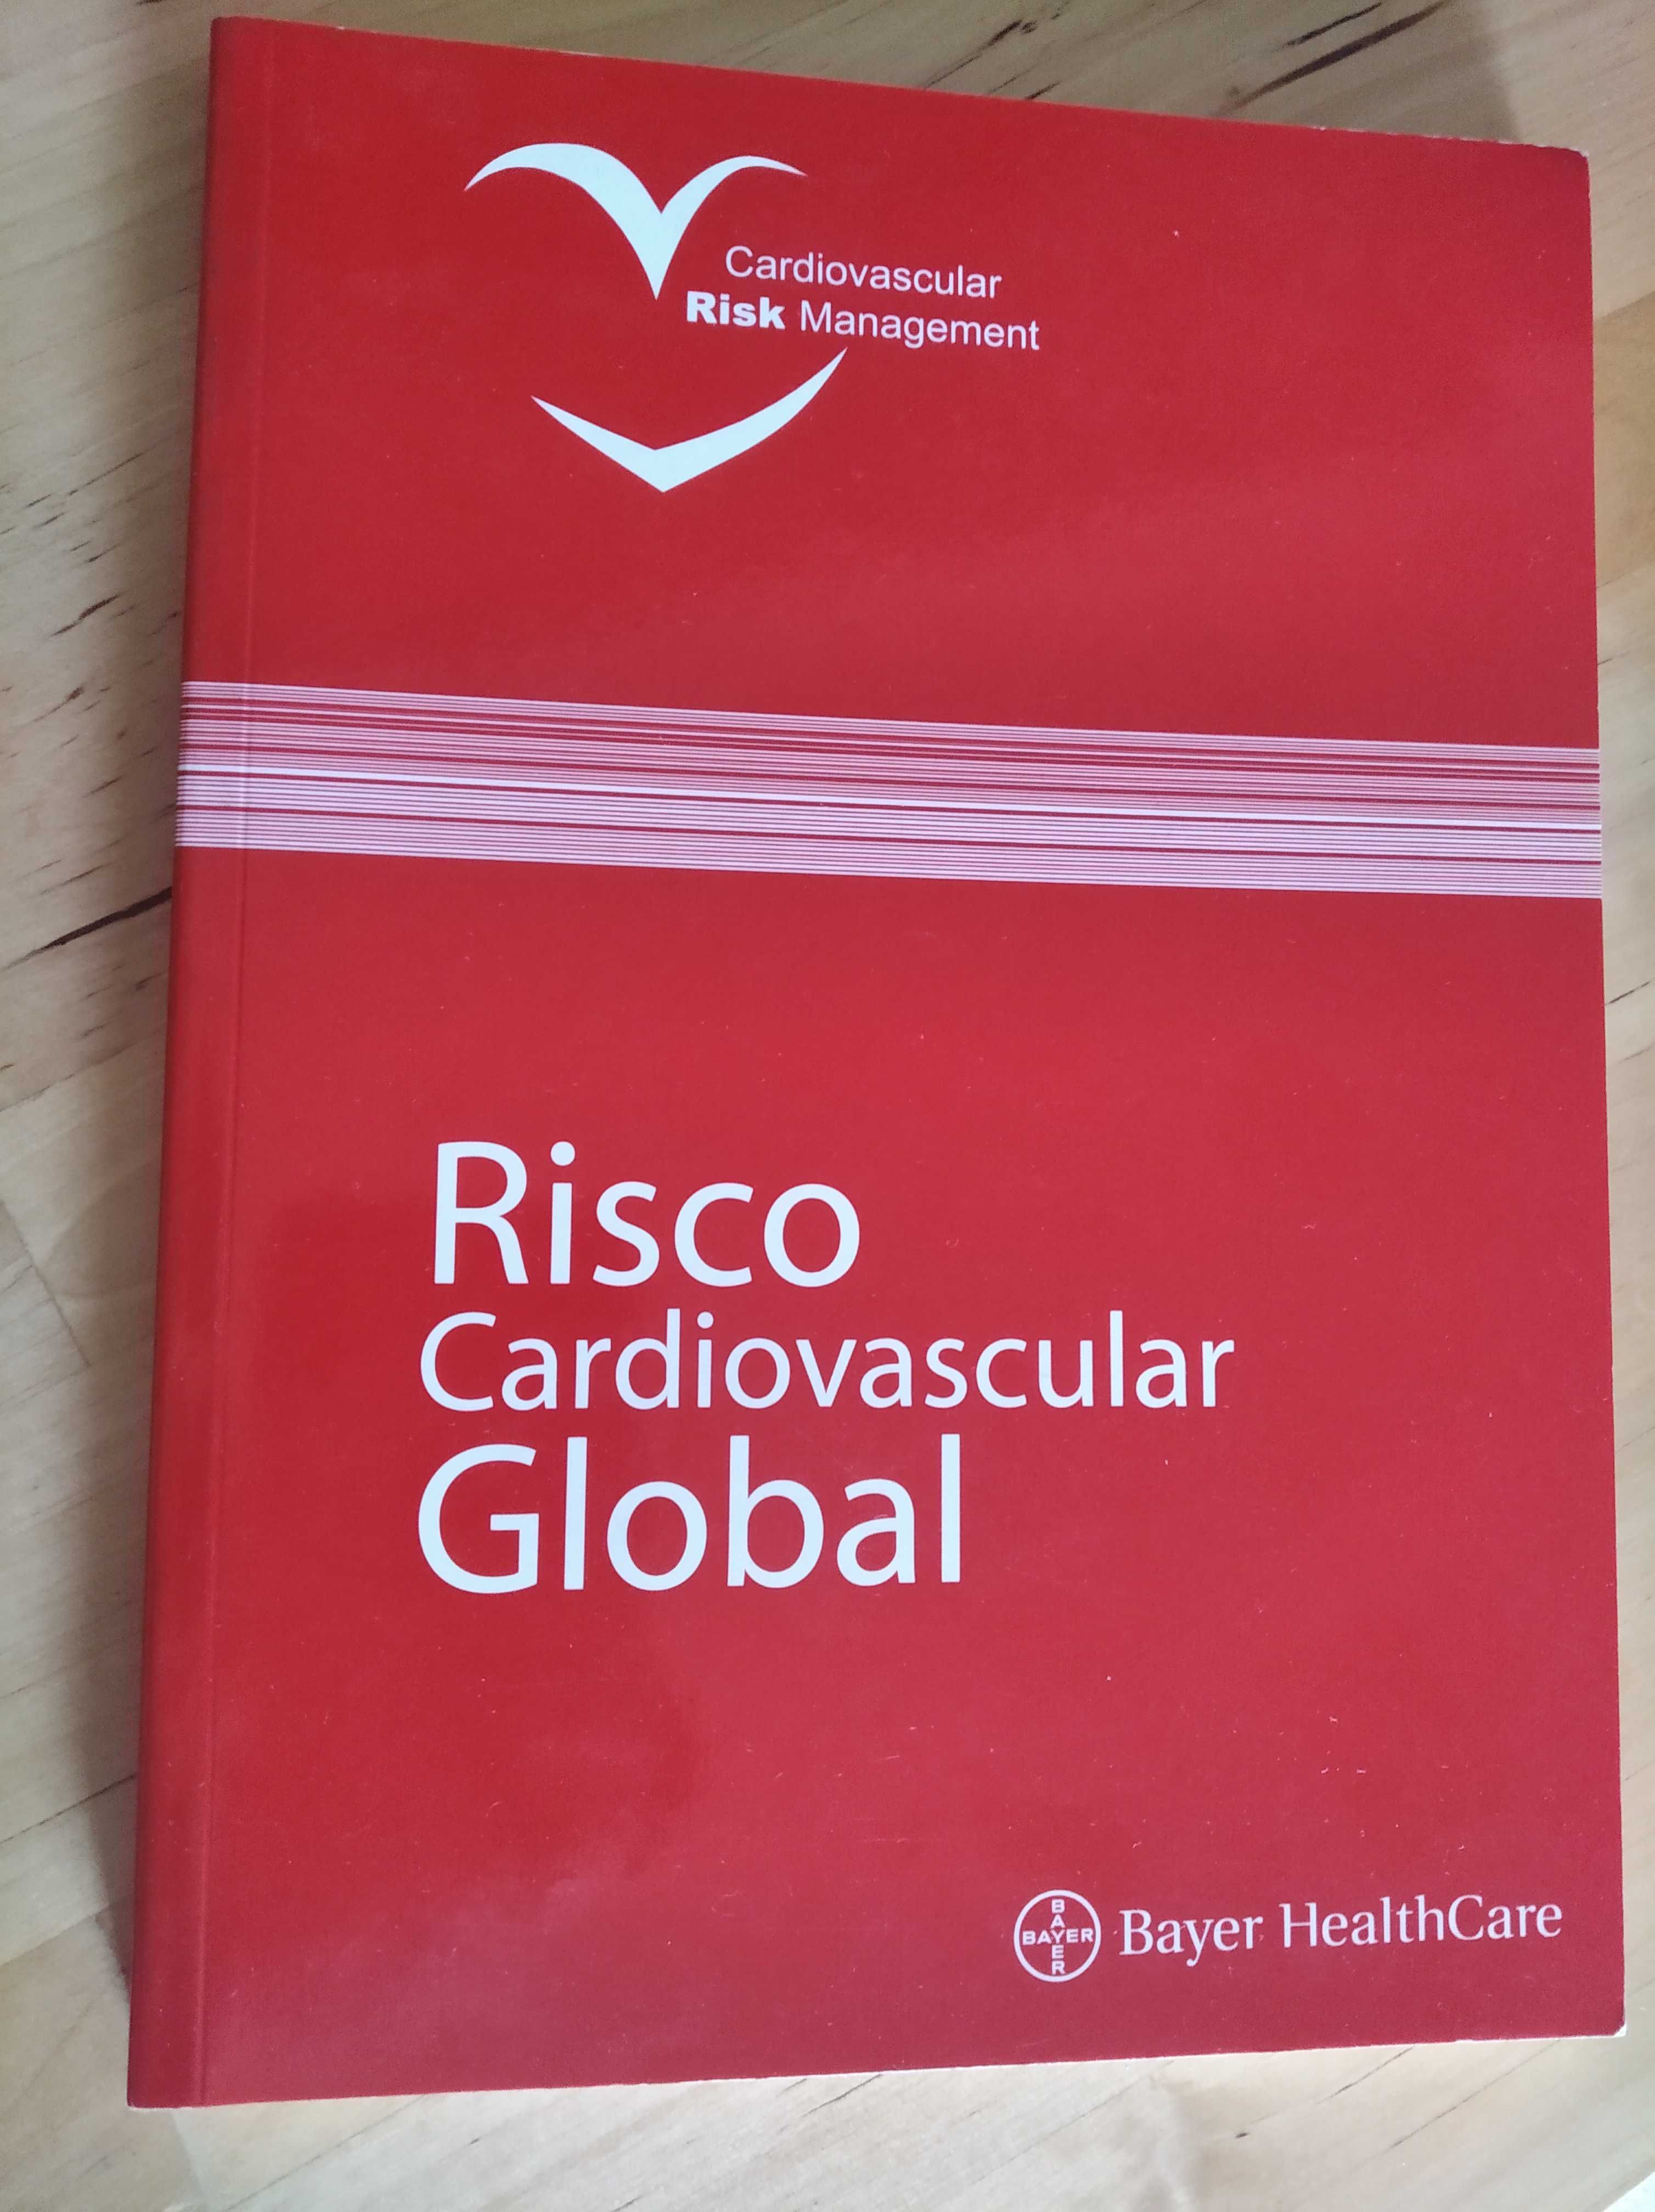 Livro de Medicina: "Risco Cardiovascular Global"